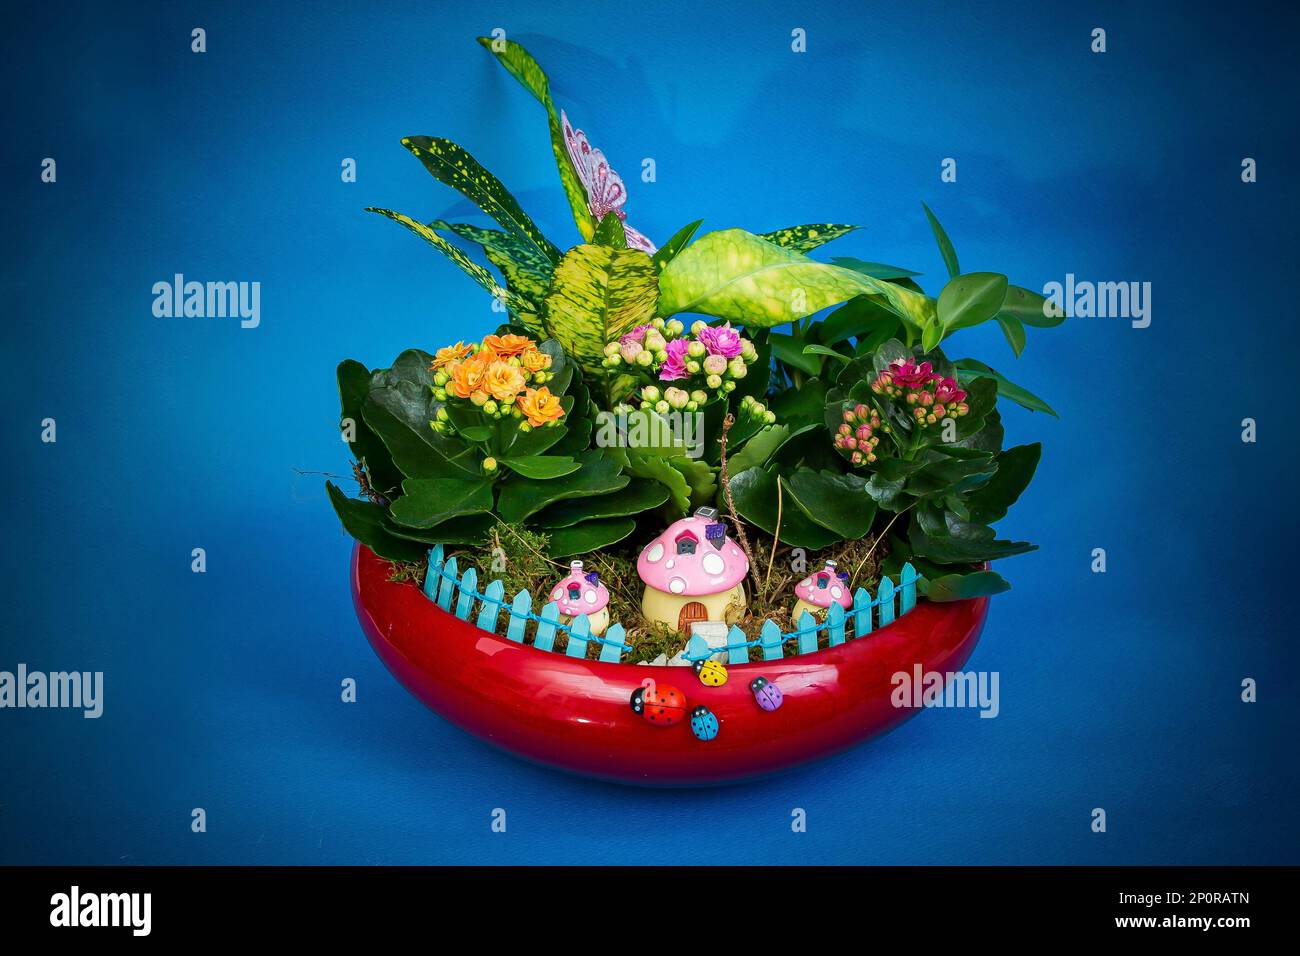 Kalanchoe fiore fiorisce in un vaso di ceramica rossa, su sfondo blu con forte vignettatura Foto Stock